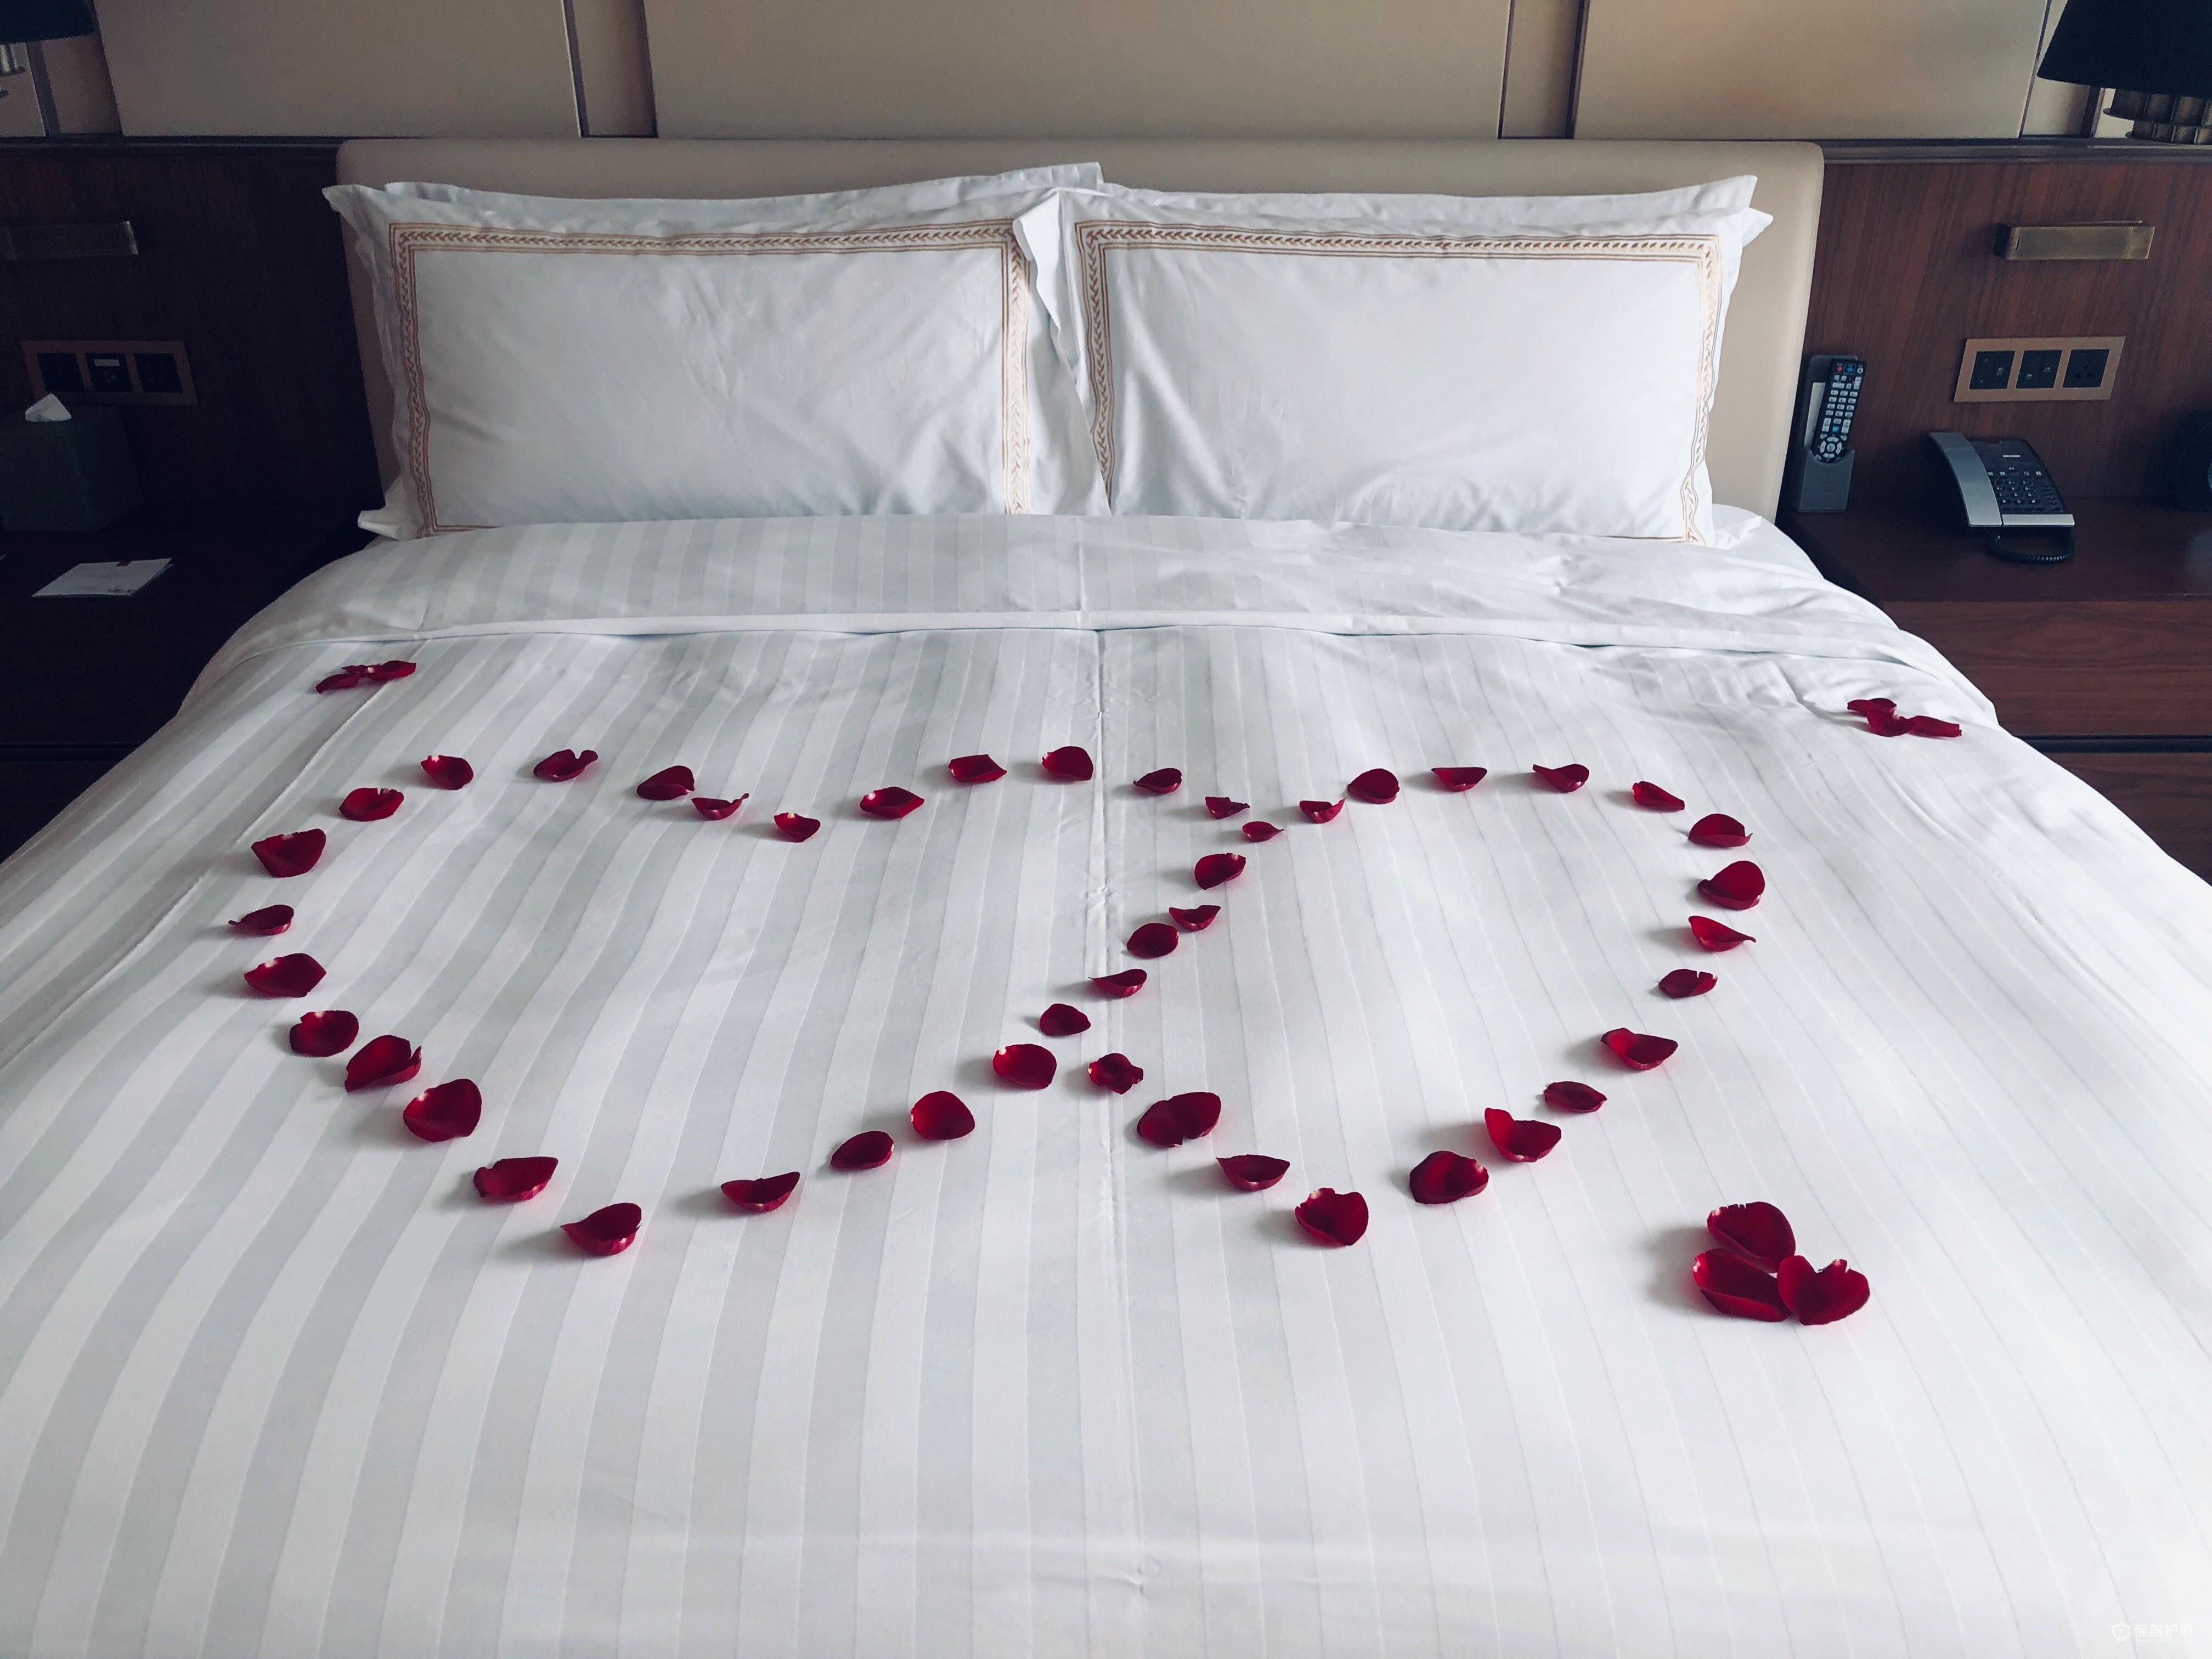 酒店创意客房床上布置技巧 酒店创意客房床上布置图片